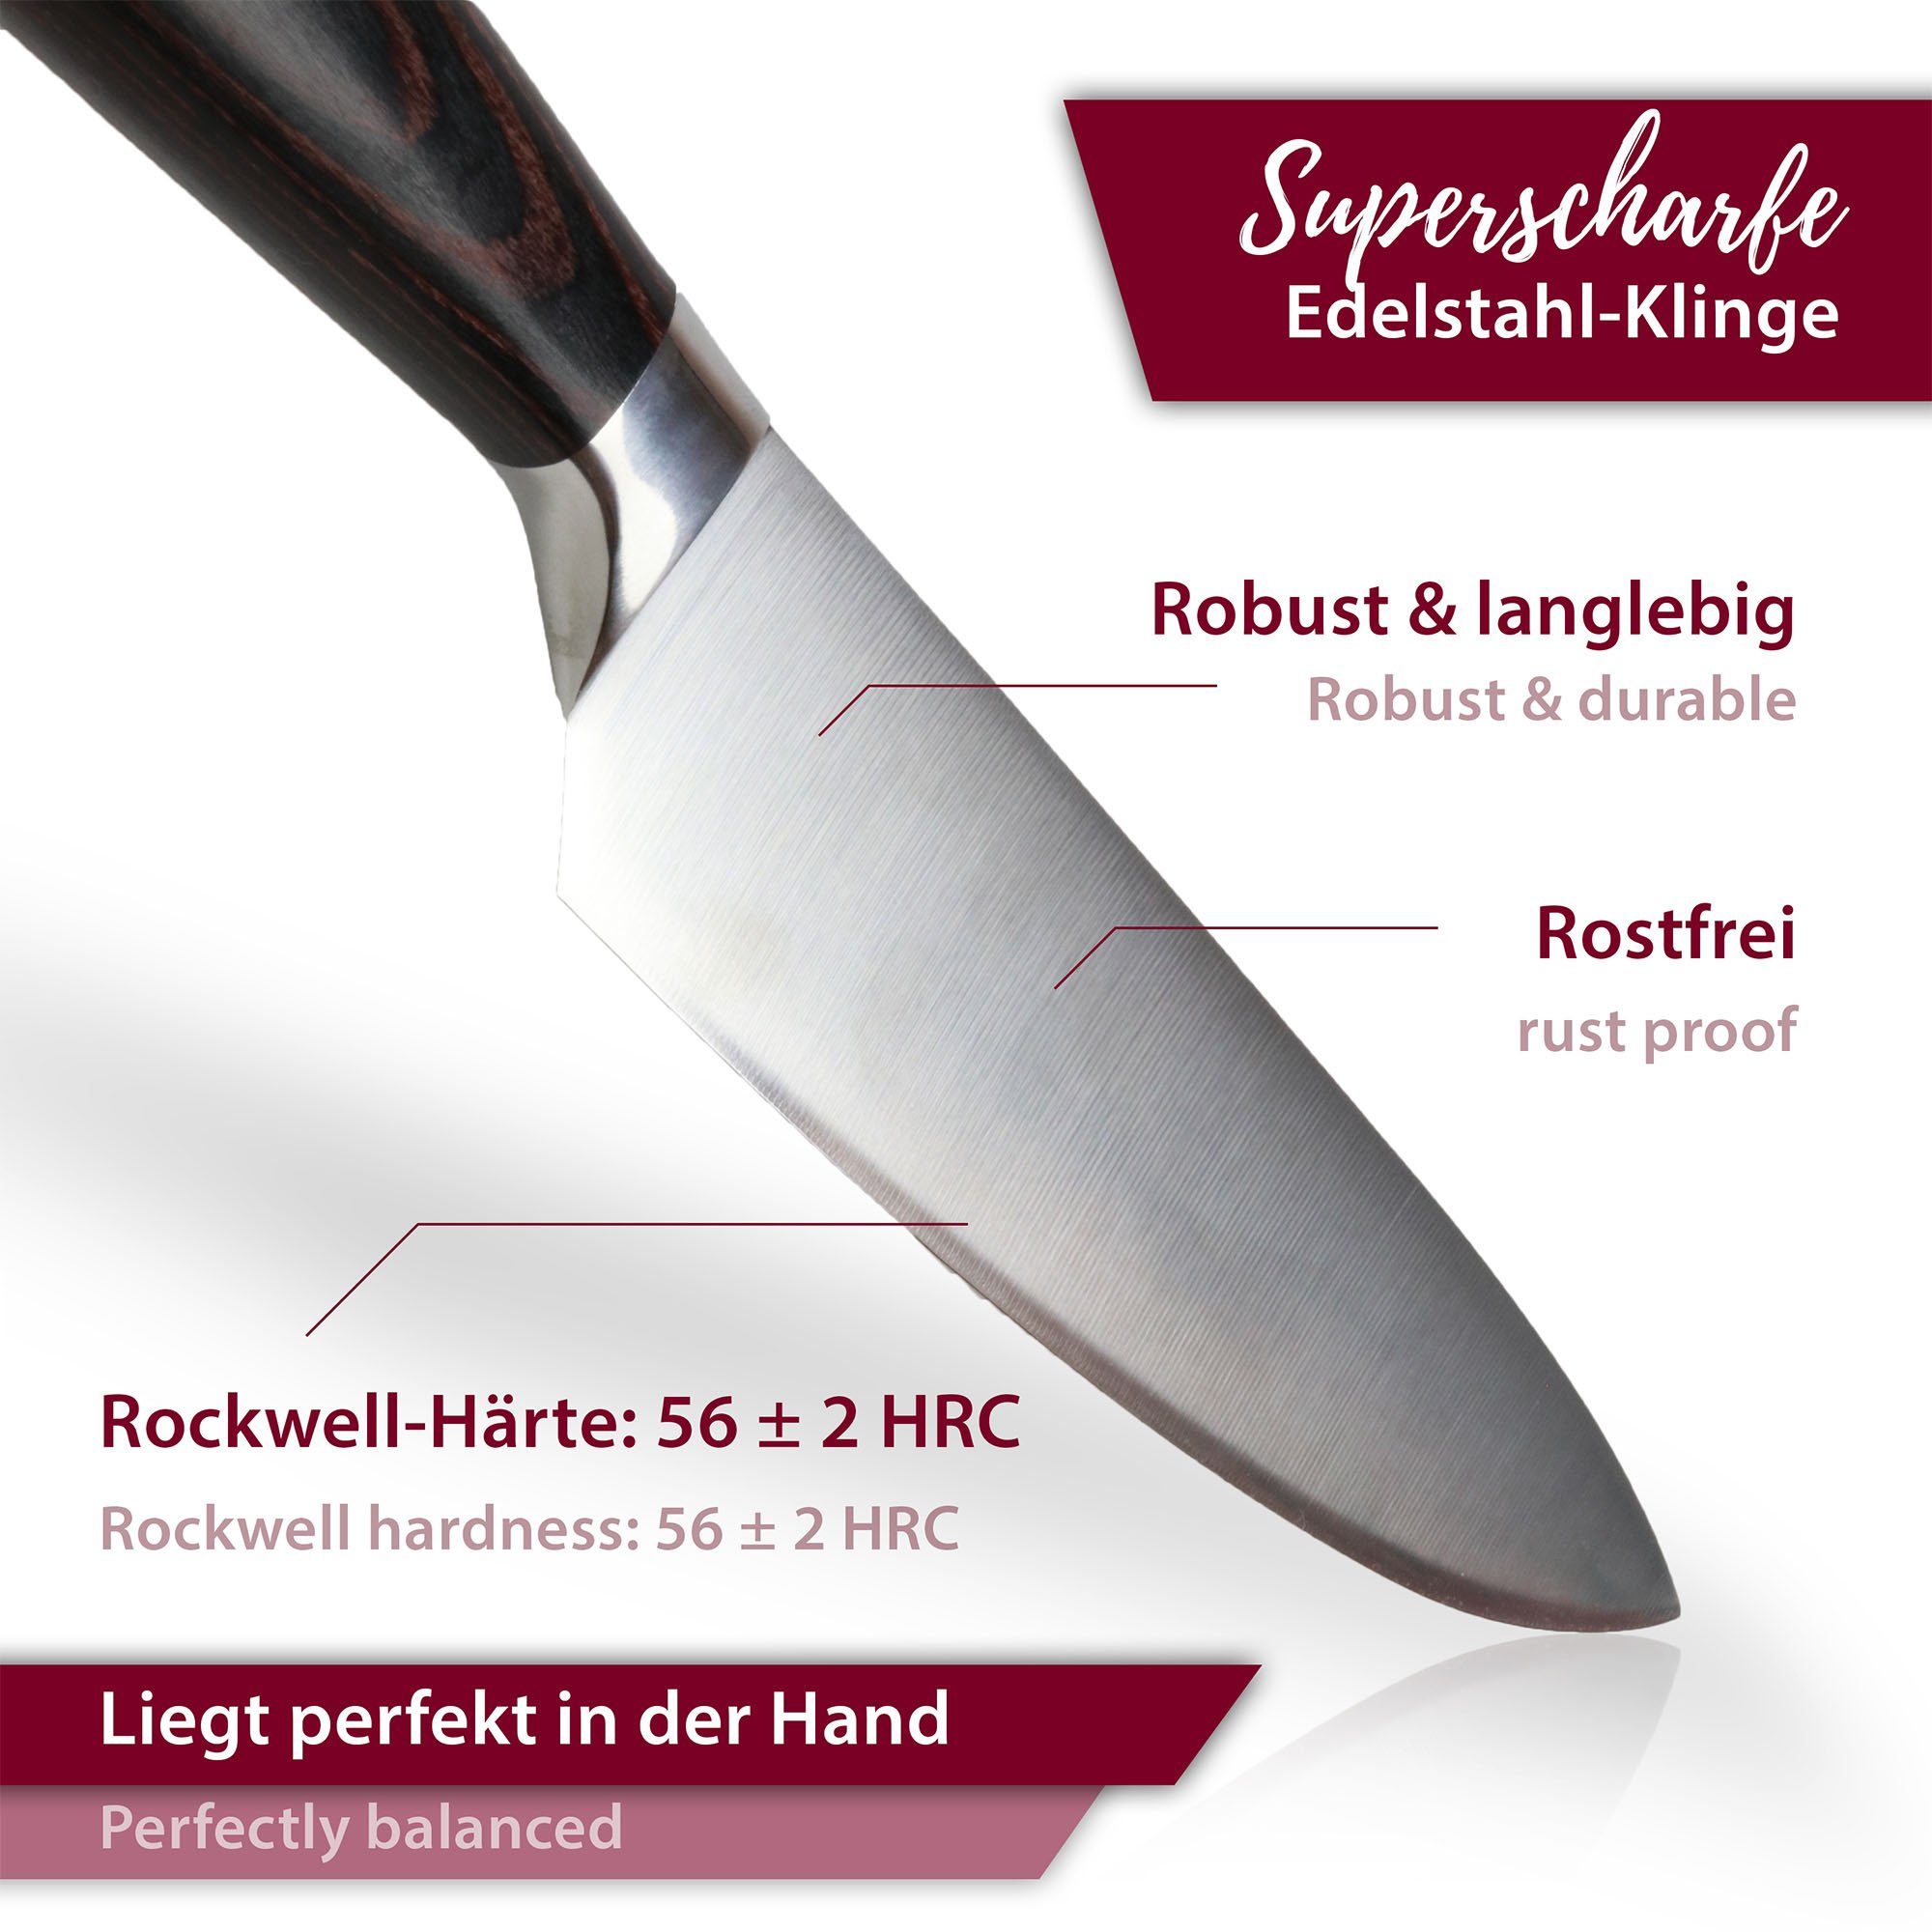 Klinge Edelstahl - rostfreier Pakkaholz & extra scharfer mit Universalküchenmesser Griff natumo